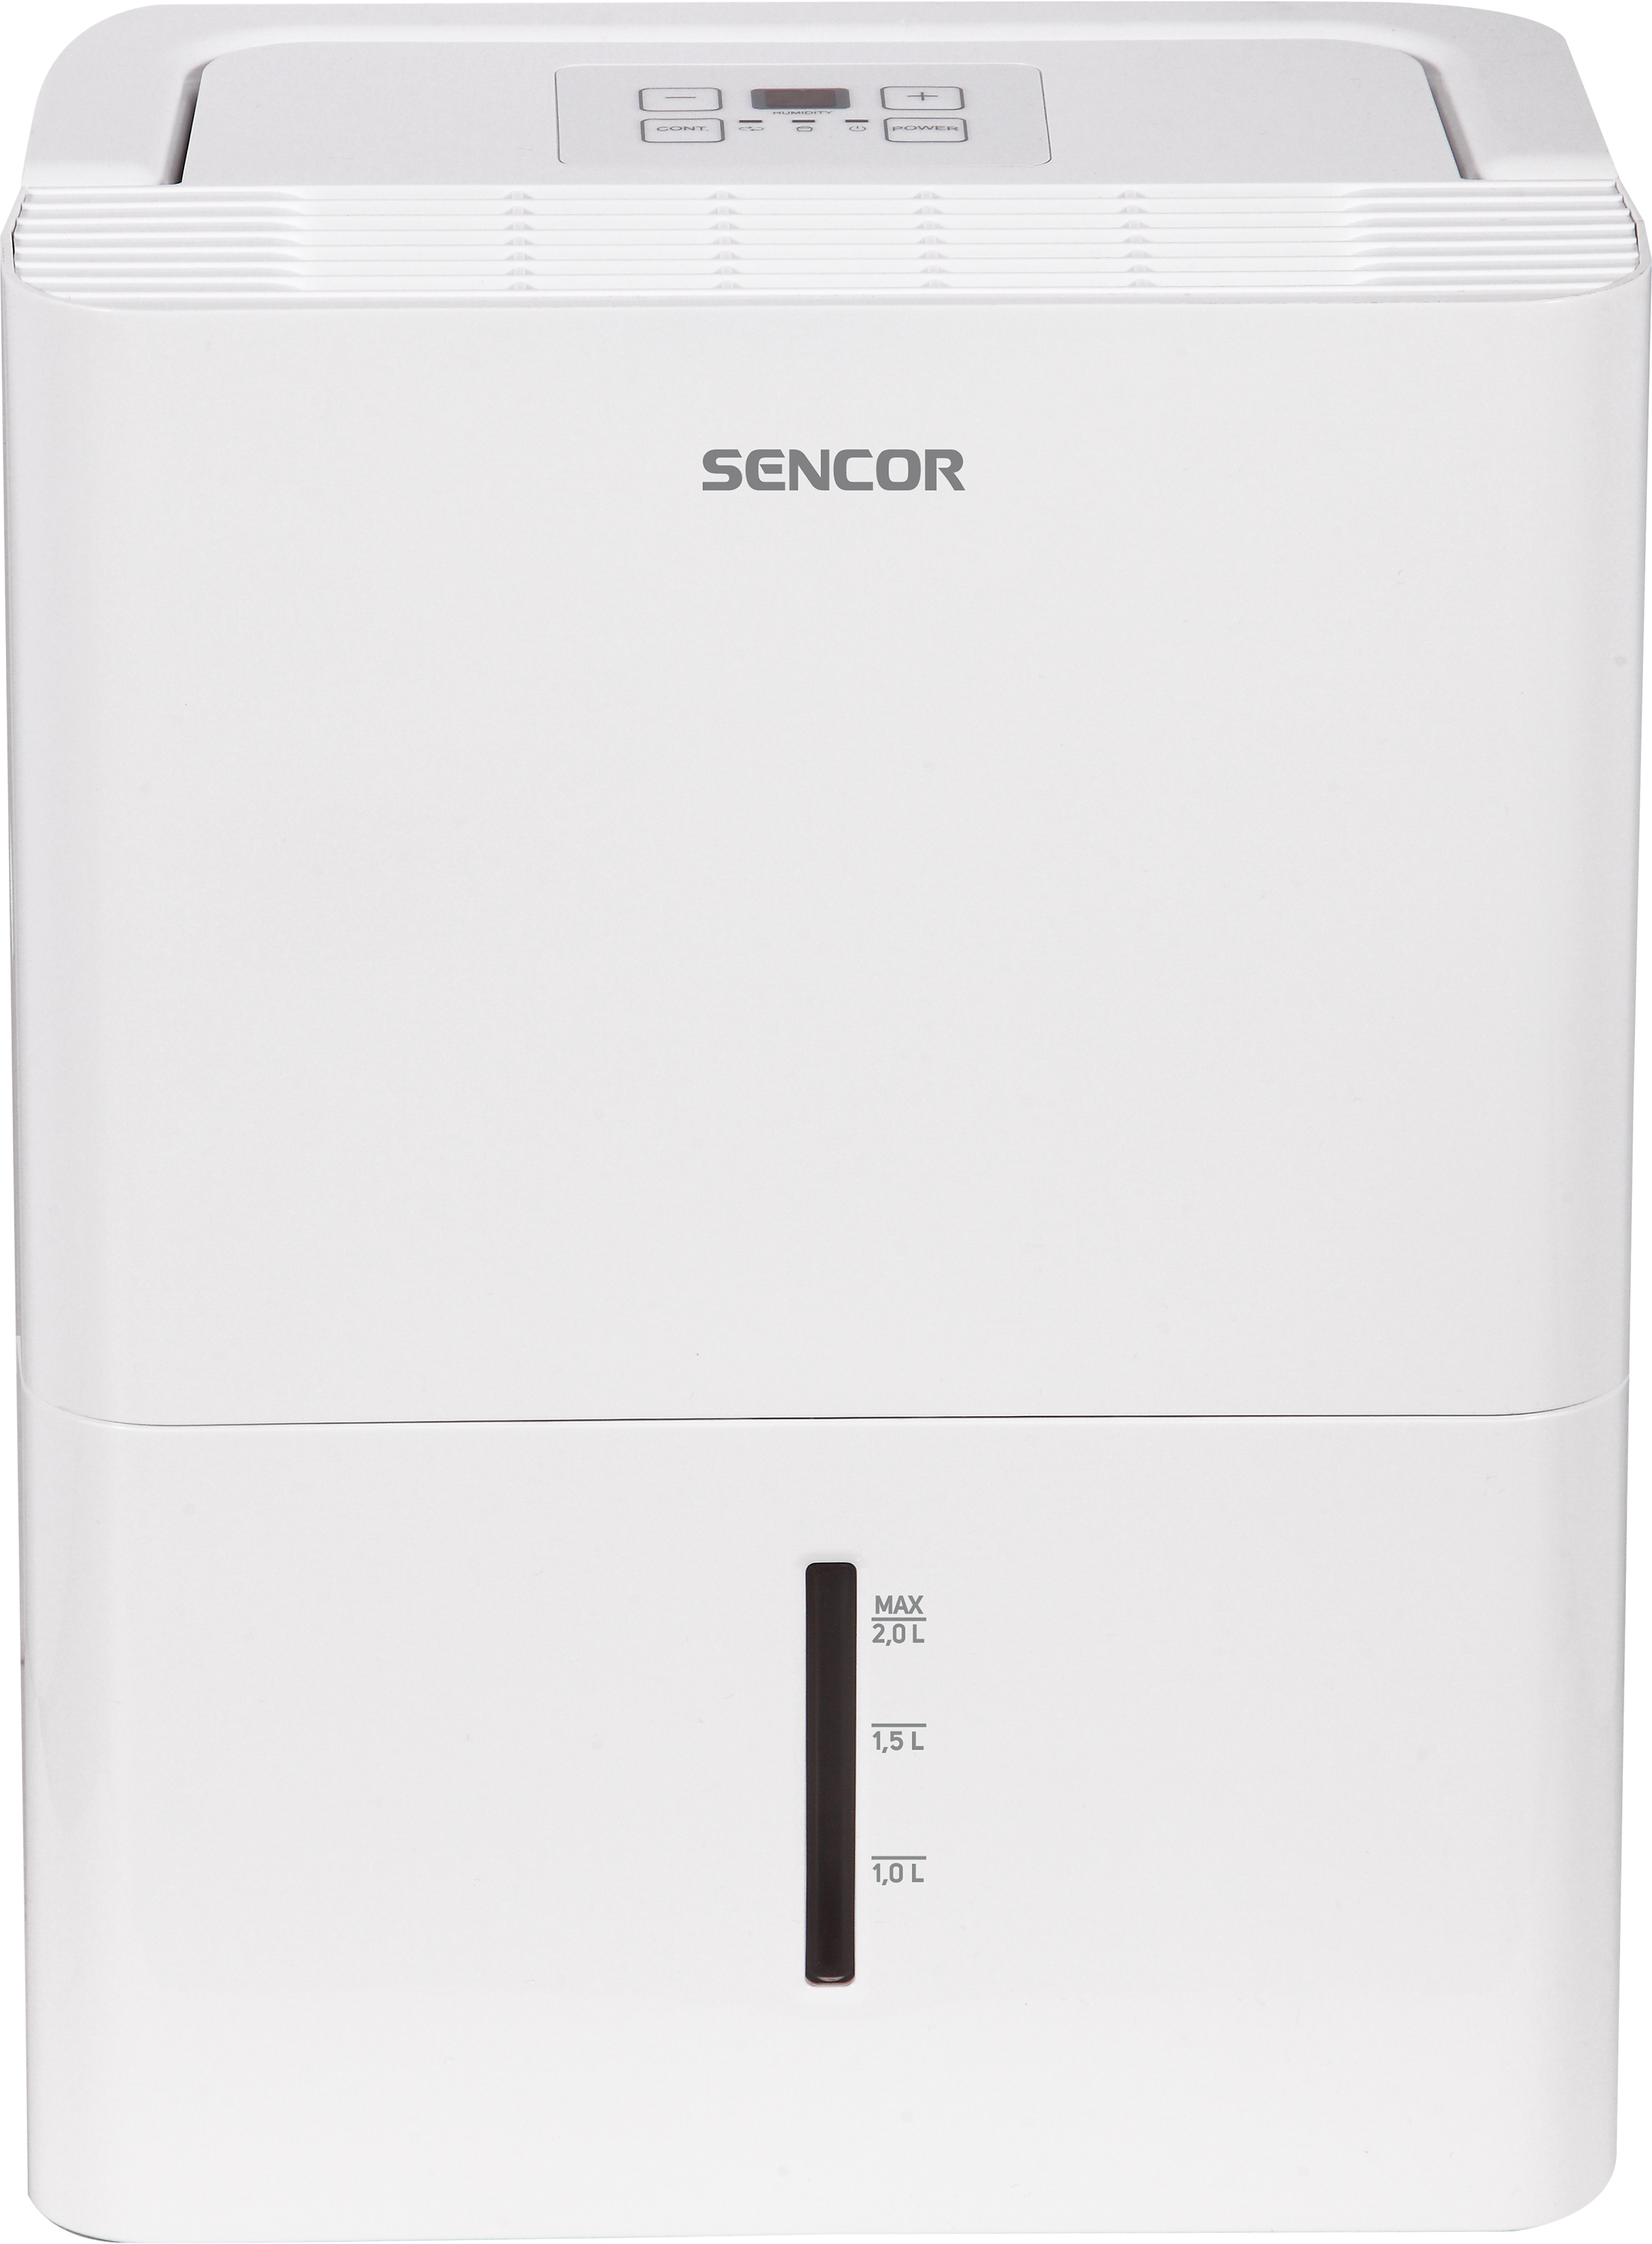 Осушитель воздуха Sencor SDH 1020WH в интернет-магазине, главное фото